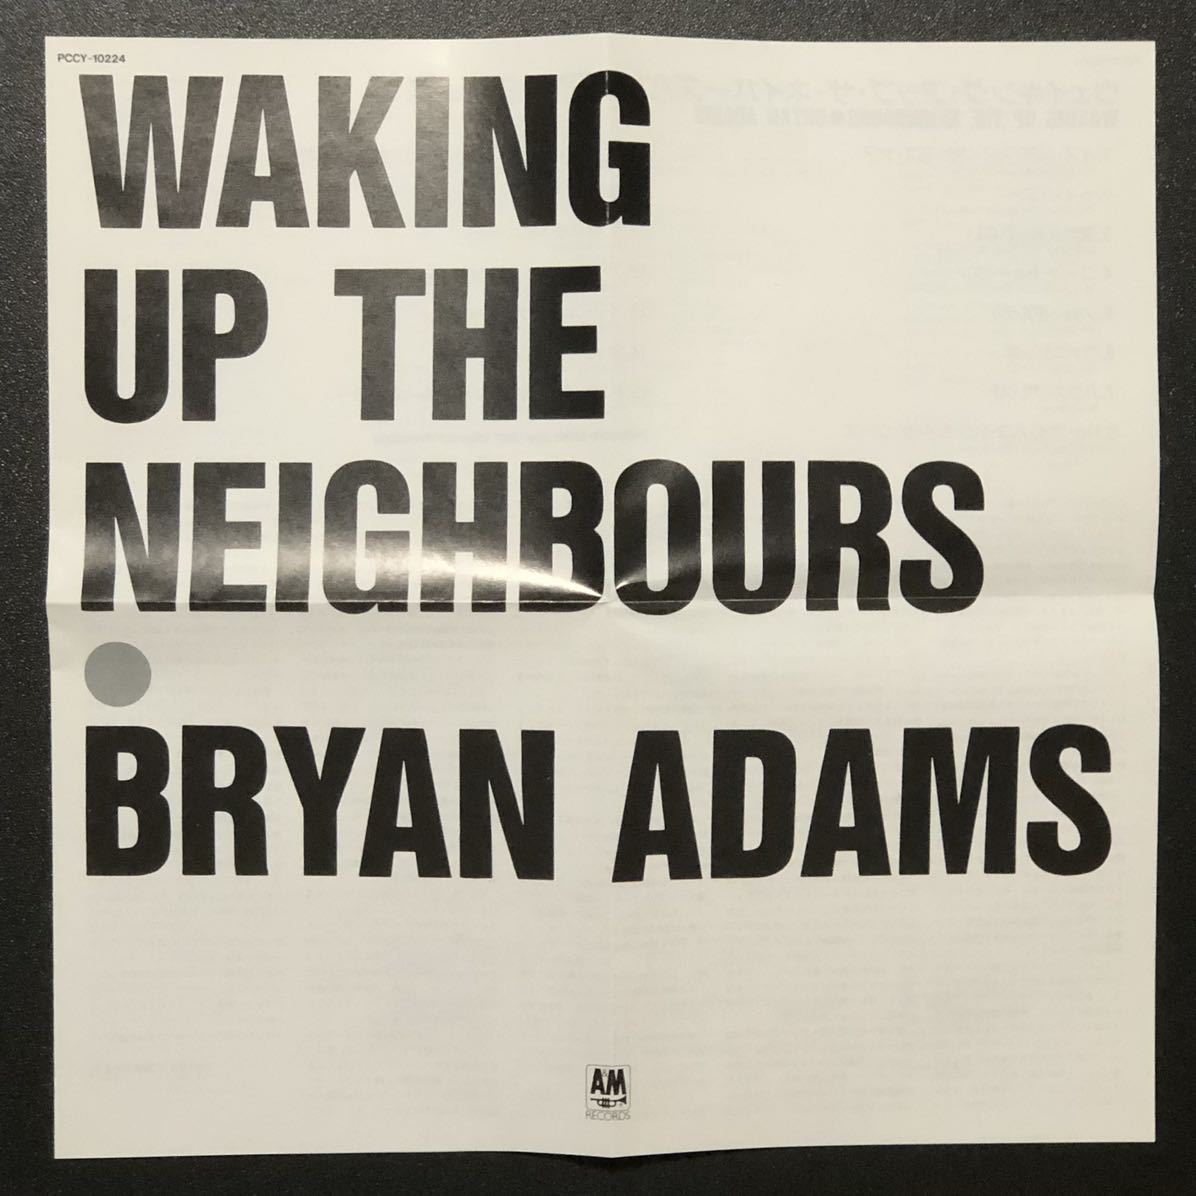 初盤 帯付 美品★CD「Bryan Adams ウェイキング・アップ・ザ・ネイバーズ」★ブライアン・アダムス Waking Up the Neighbours ロビンフッド